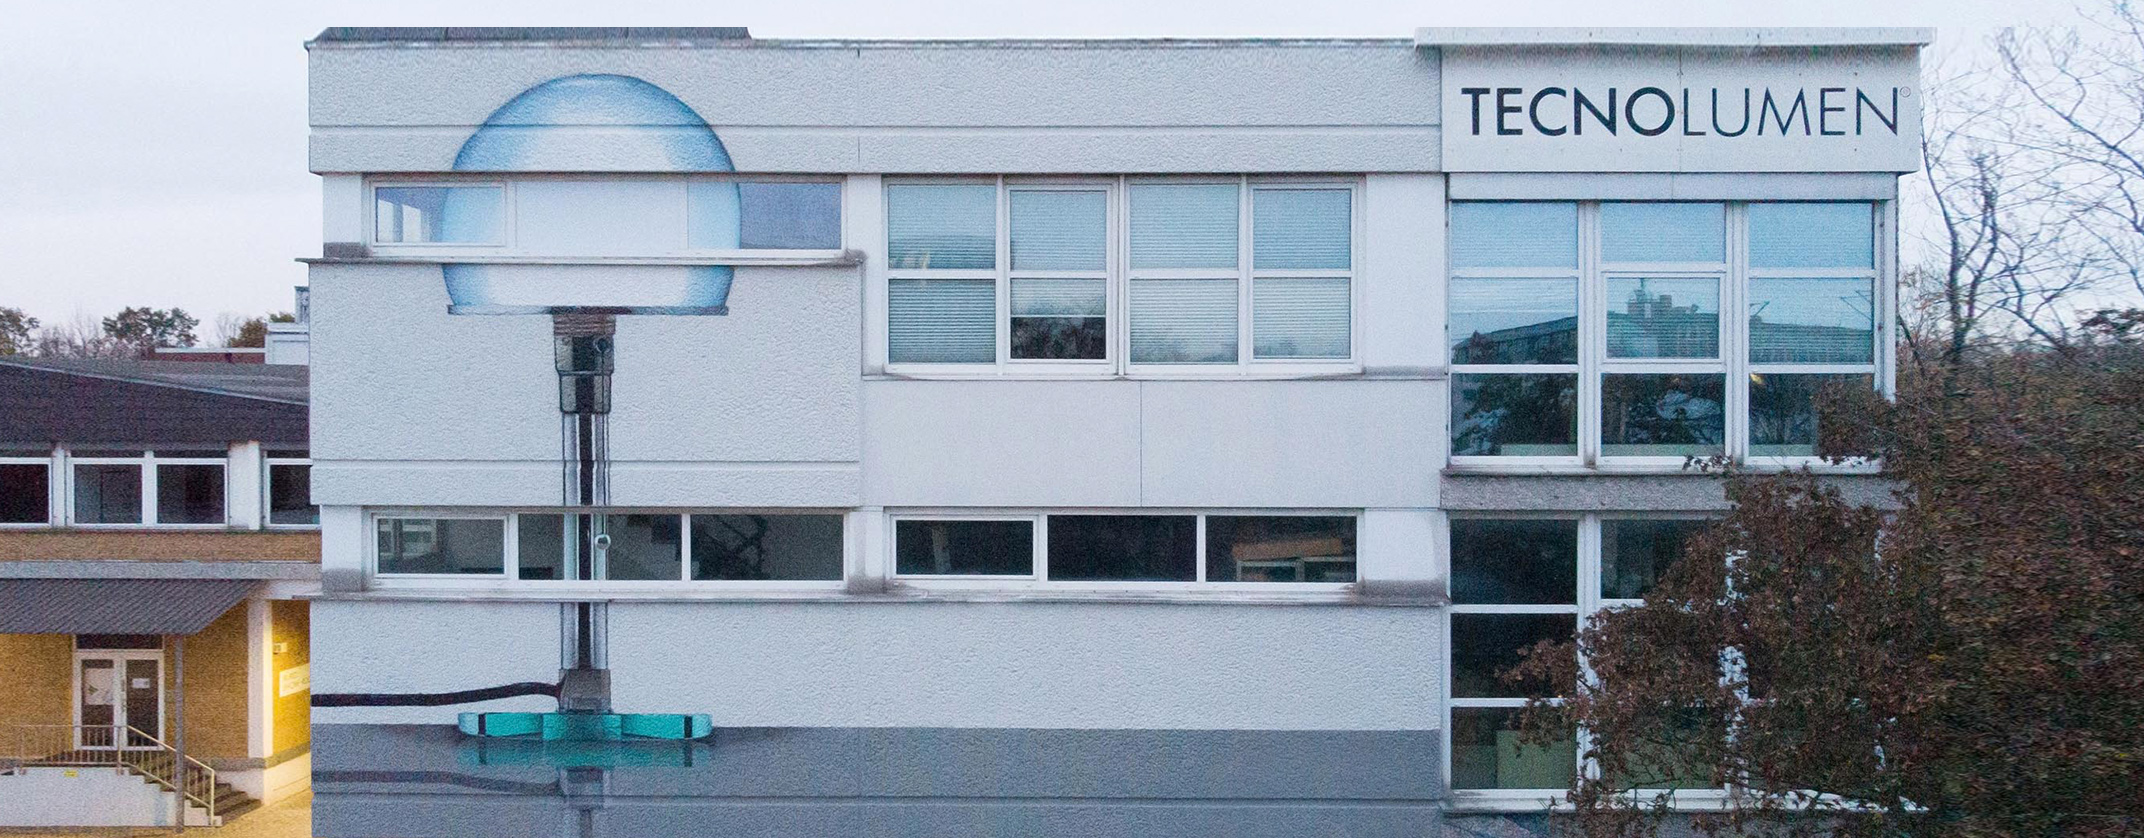 Graffiti Werbung: Fassadenarbeit für Tecno Lumen mit Wagenfeldleuchte als Motiv.